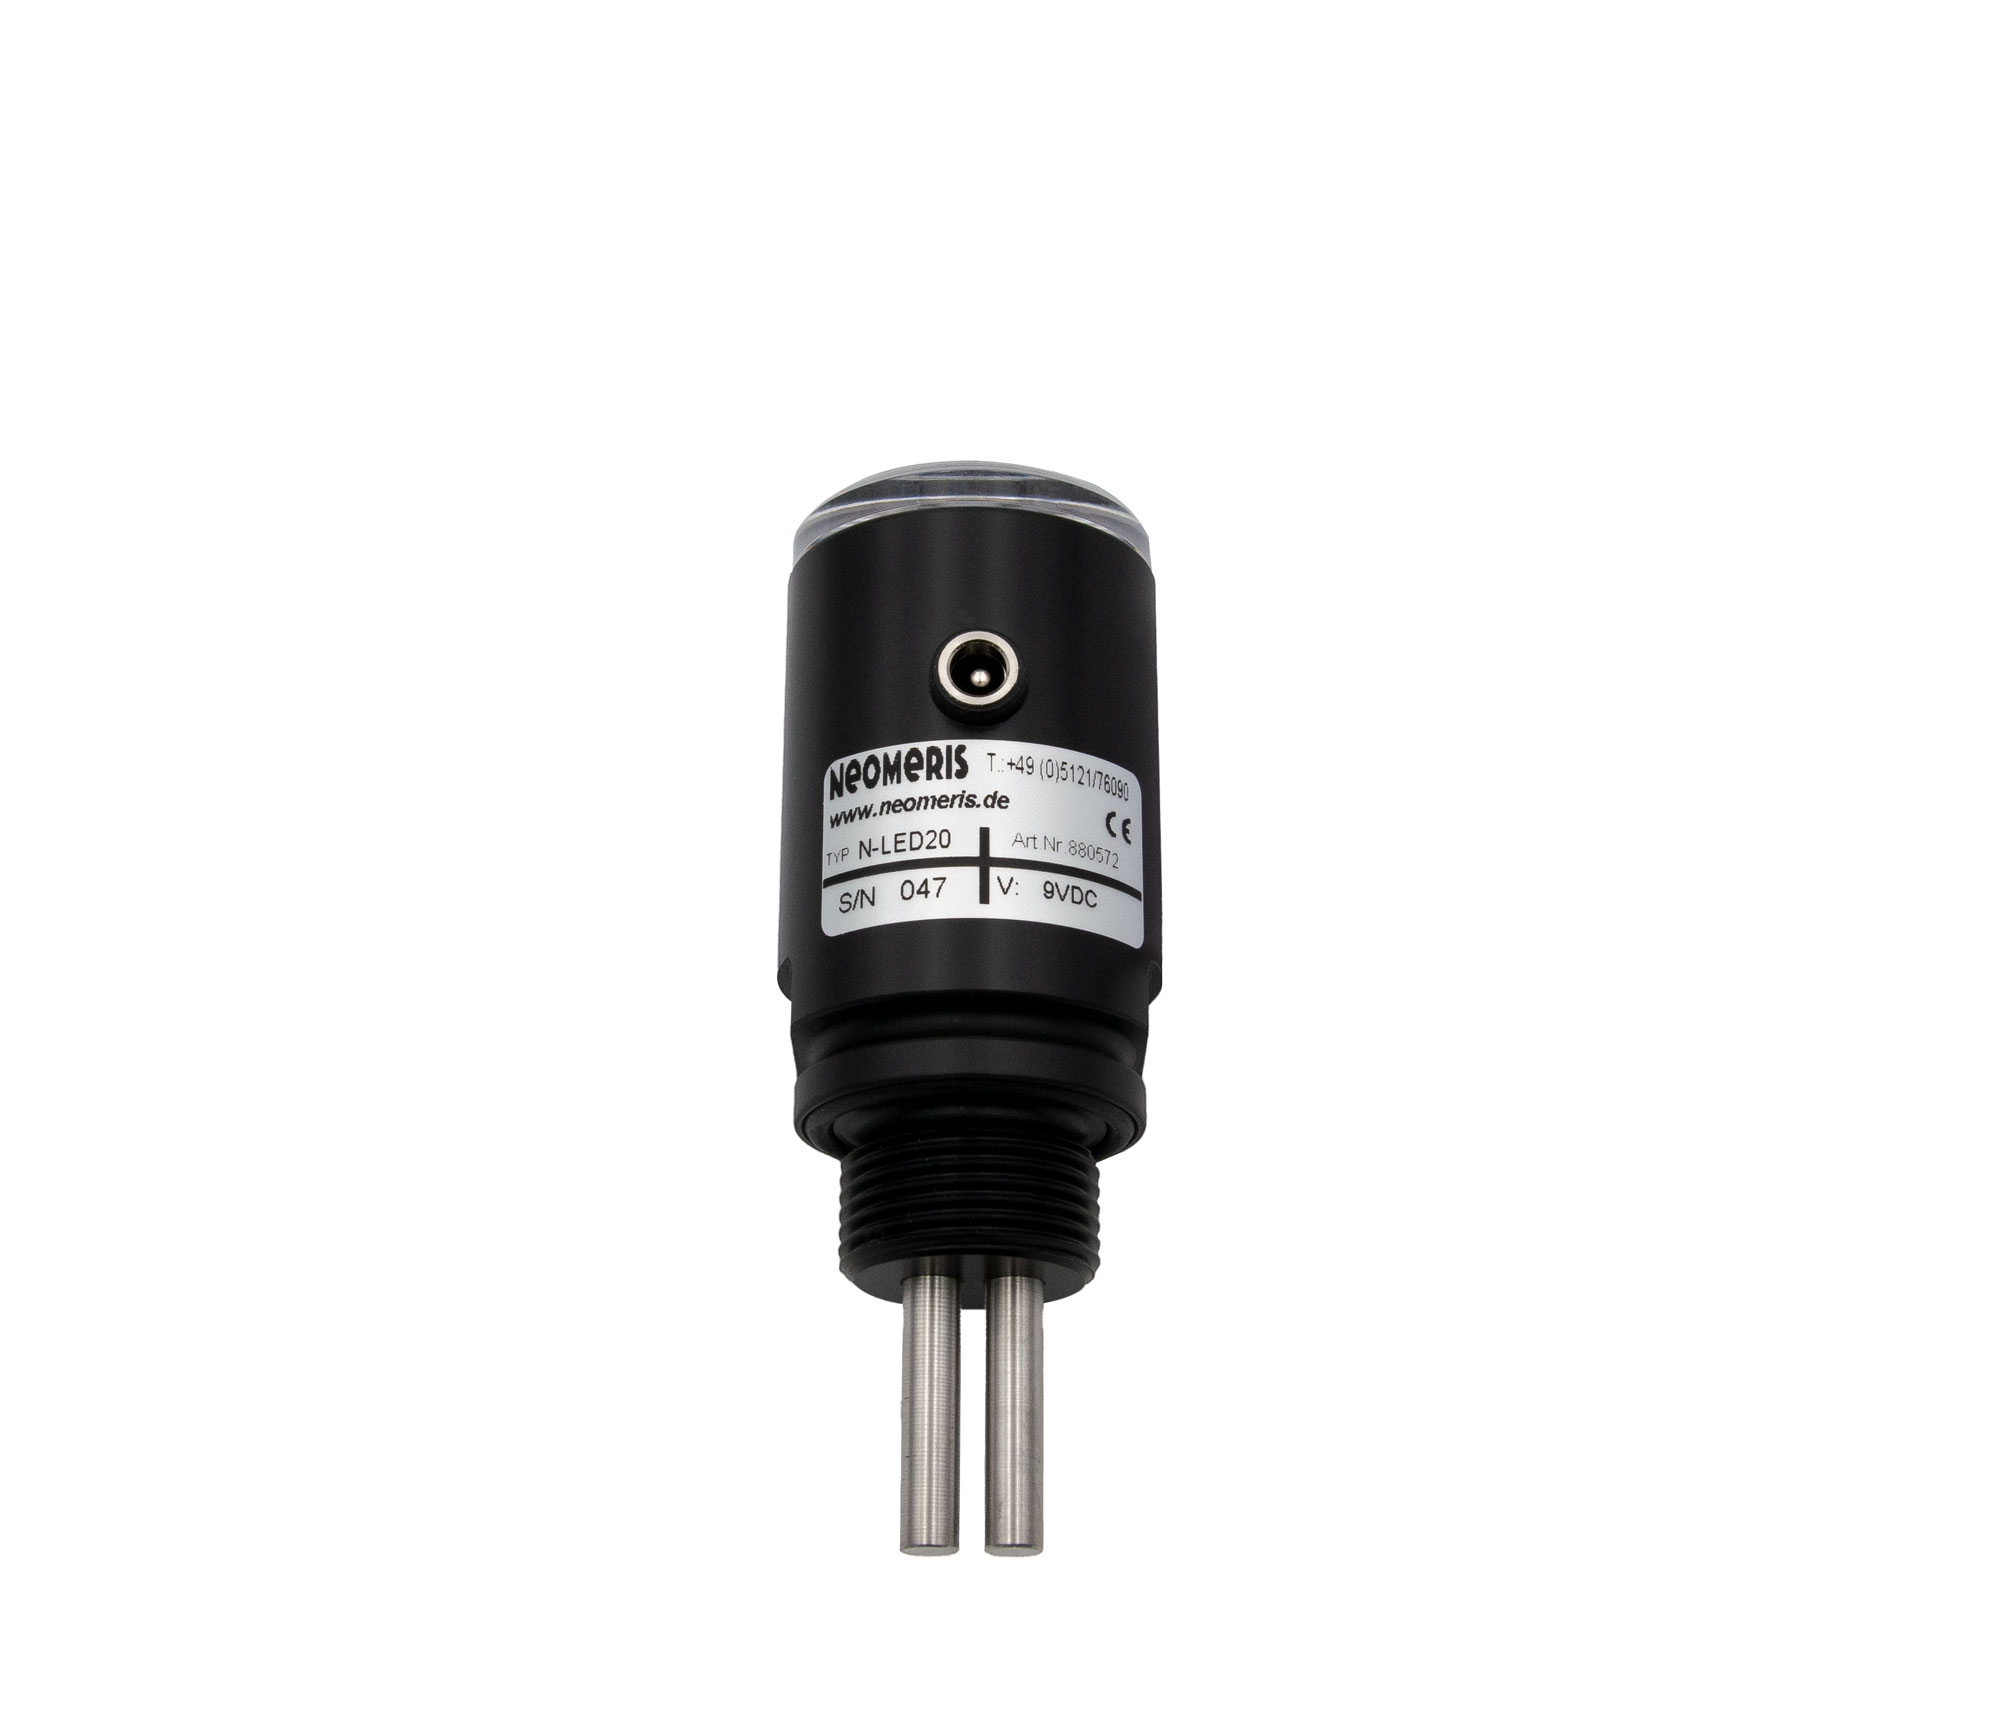 N-LED20, Leitfähigkeitsmessgerät 0-20 μS/cm mit 5 LEDs und integrierter 3/4' Einschraubmesszelle